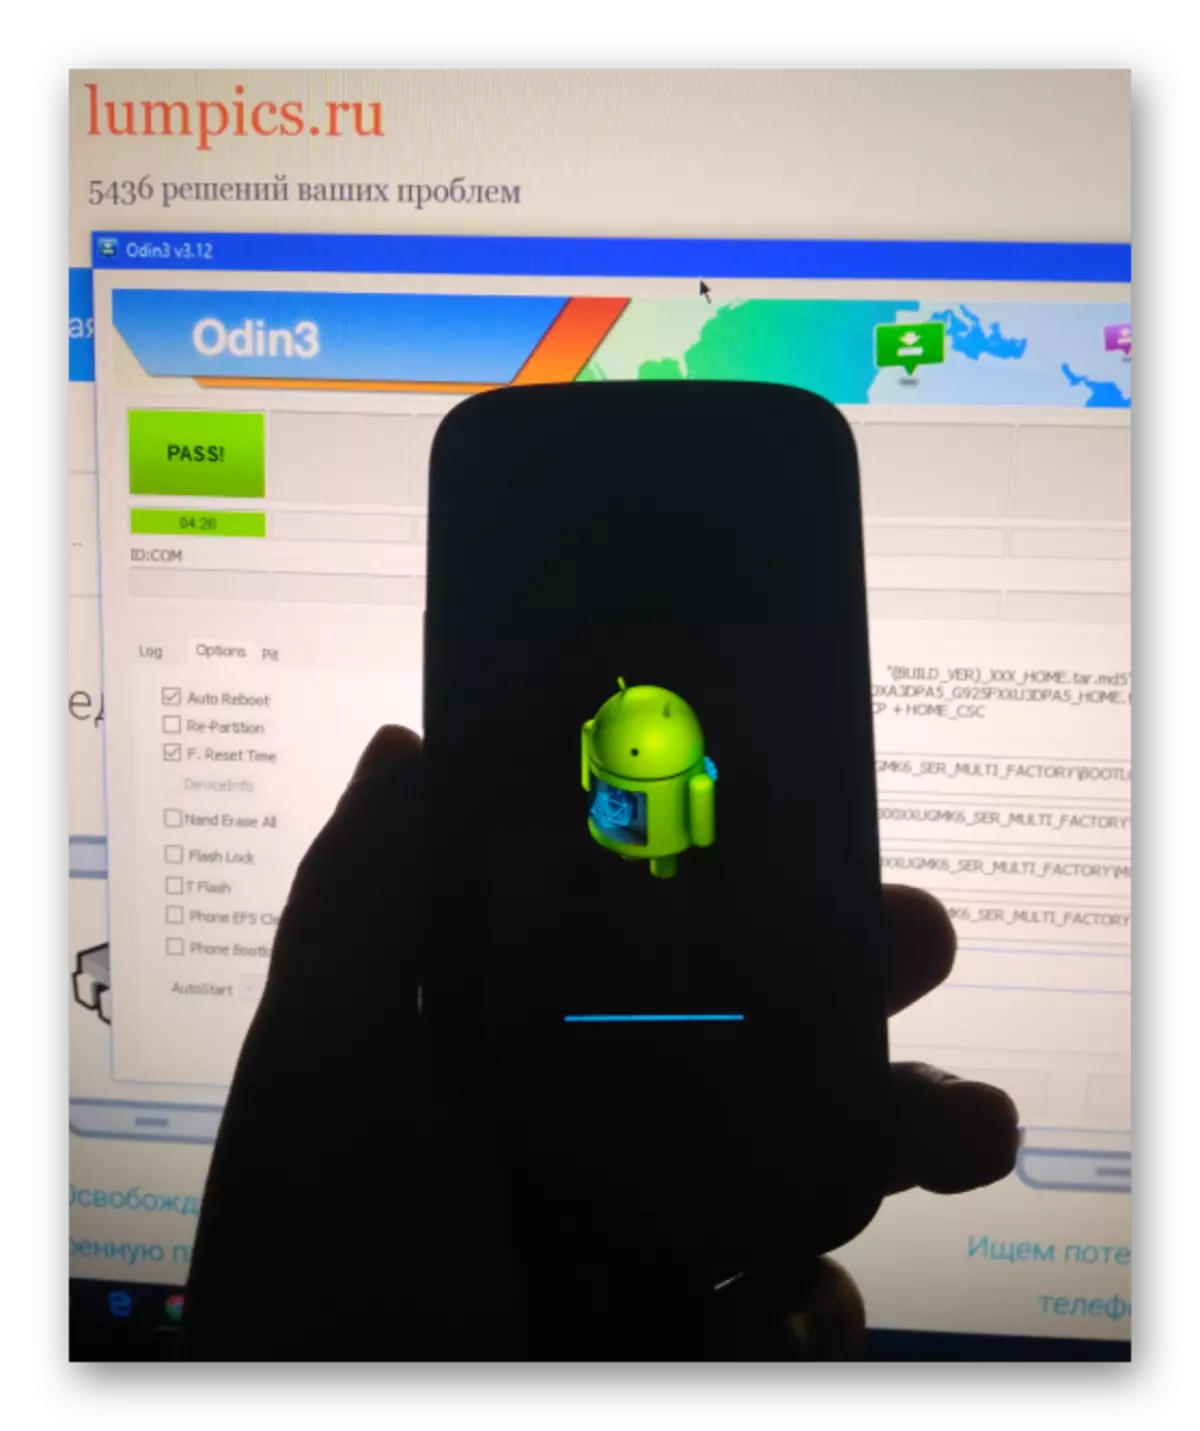 Samsung Galaxy S3 GT-I9300 Firmware-initialisaasje nei it opnimmen fia Odin